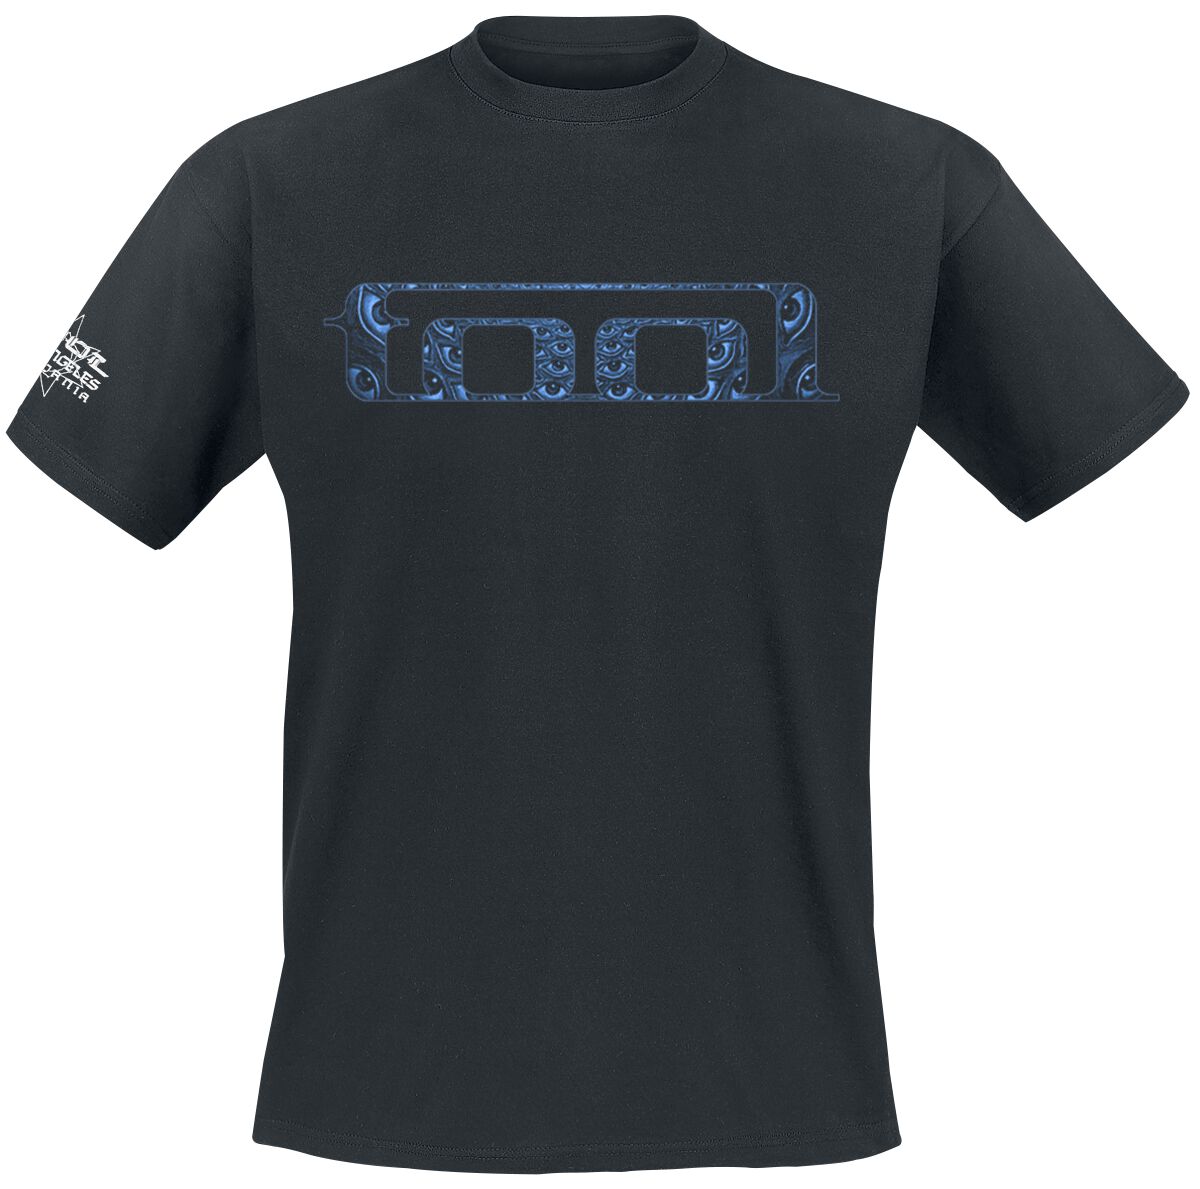 Tool T-Shirt - Blue Spectre - S bis XXL - für Männer - Größe S - schwarz  - Lizenziertes Merchandise!